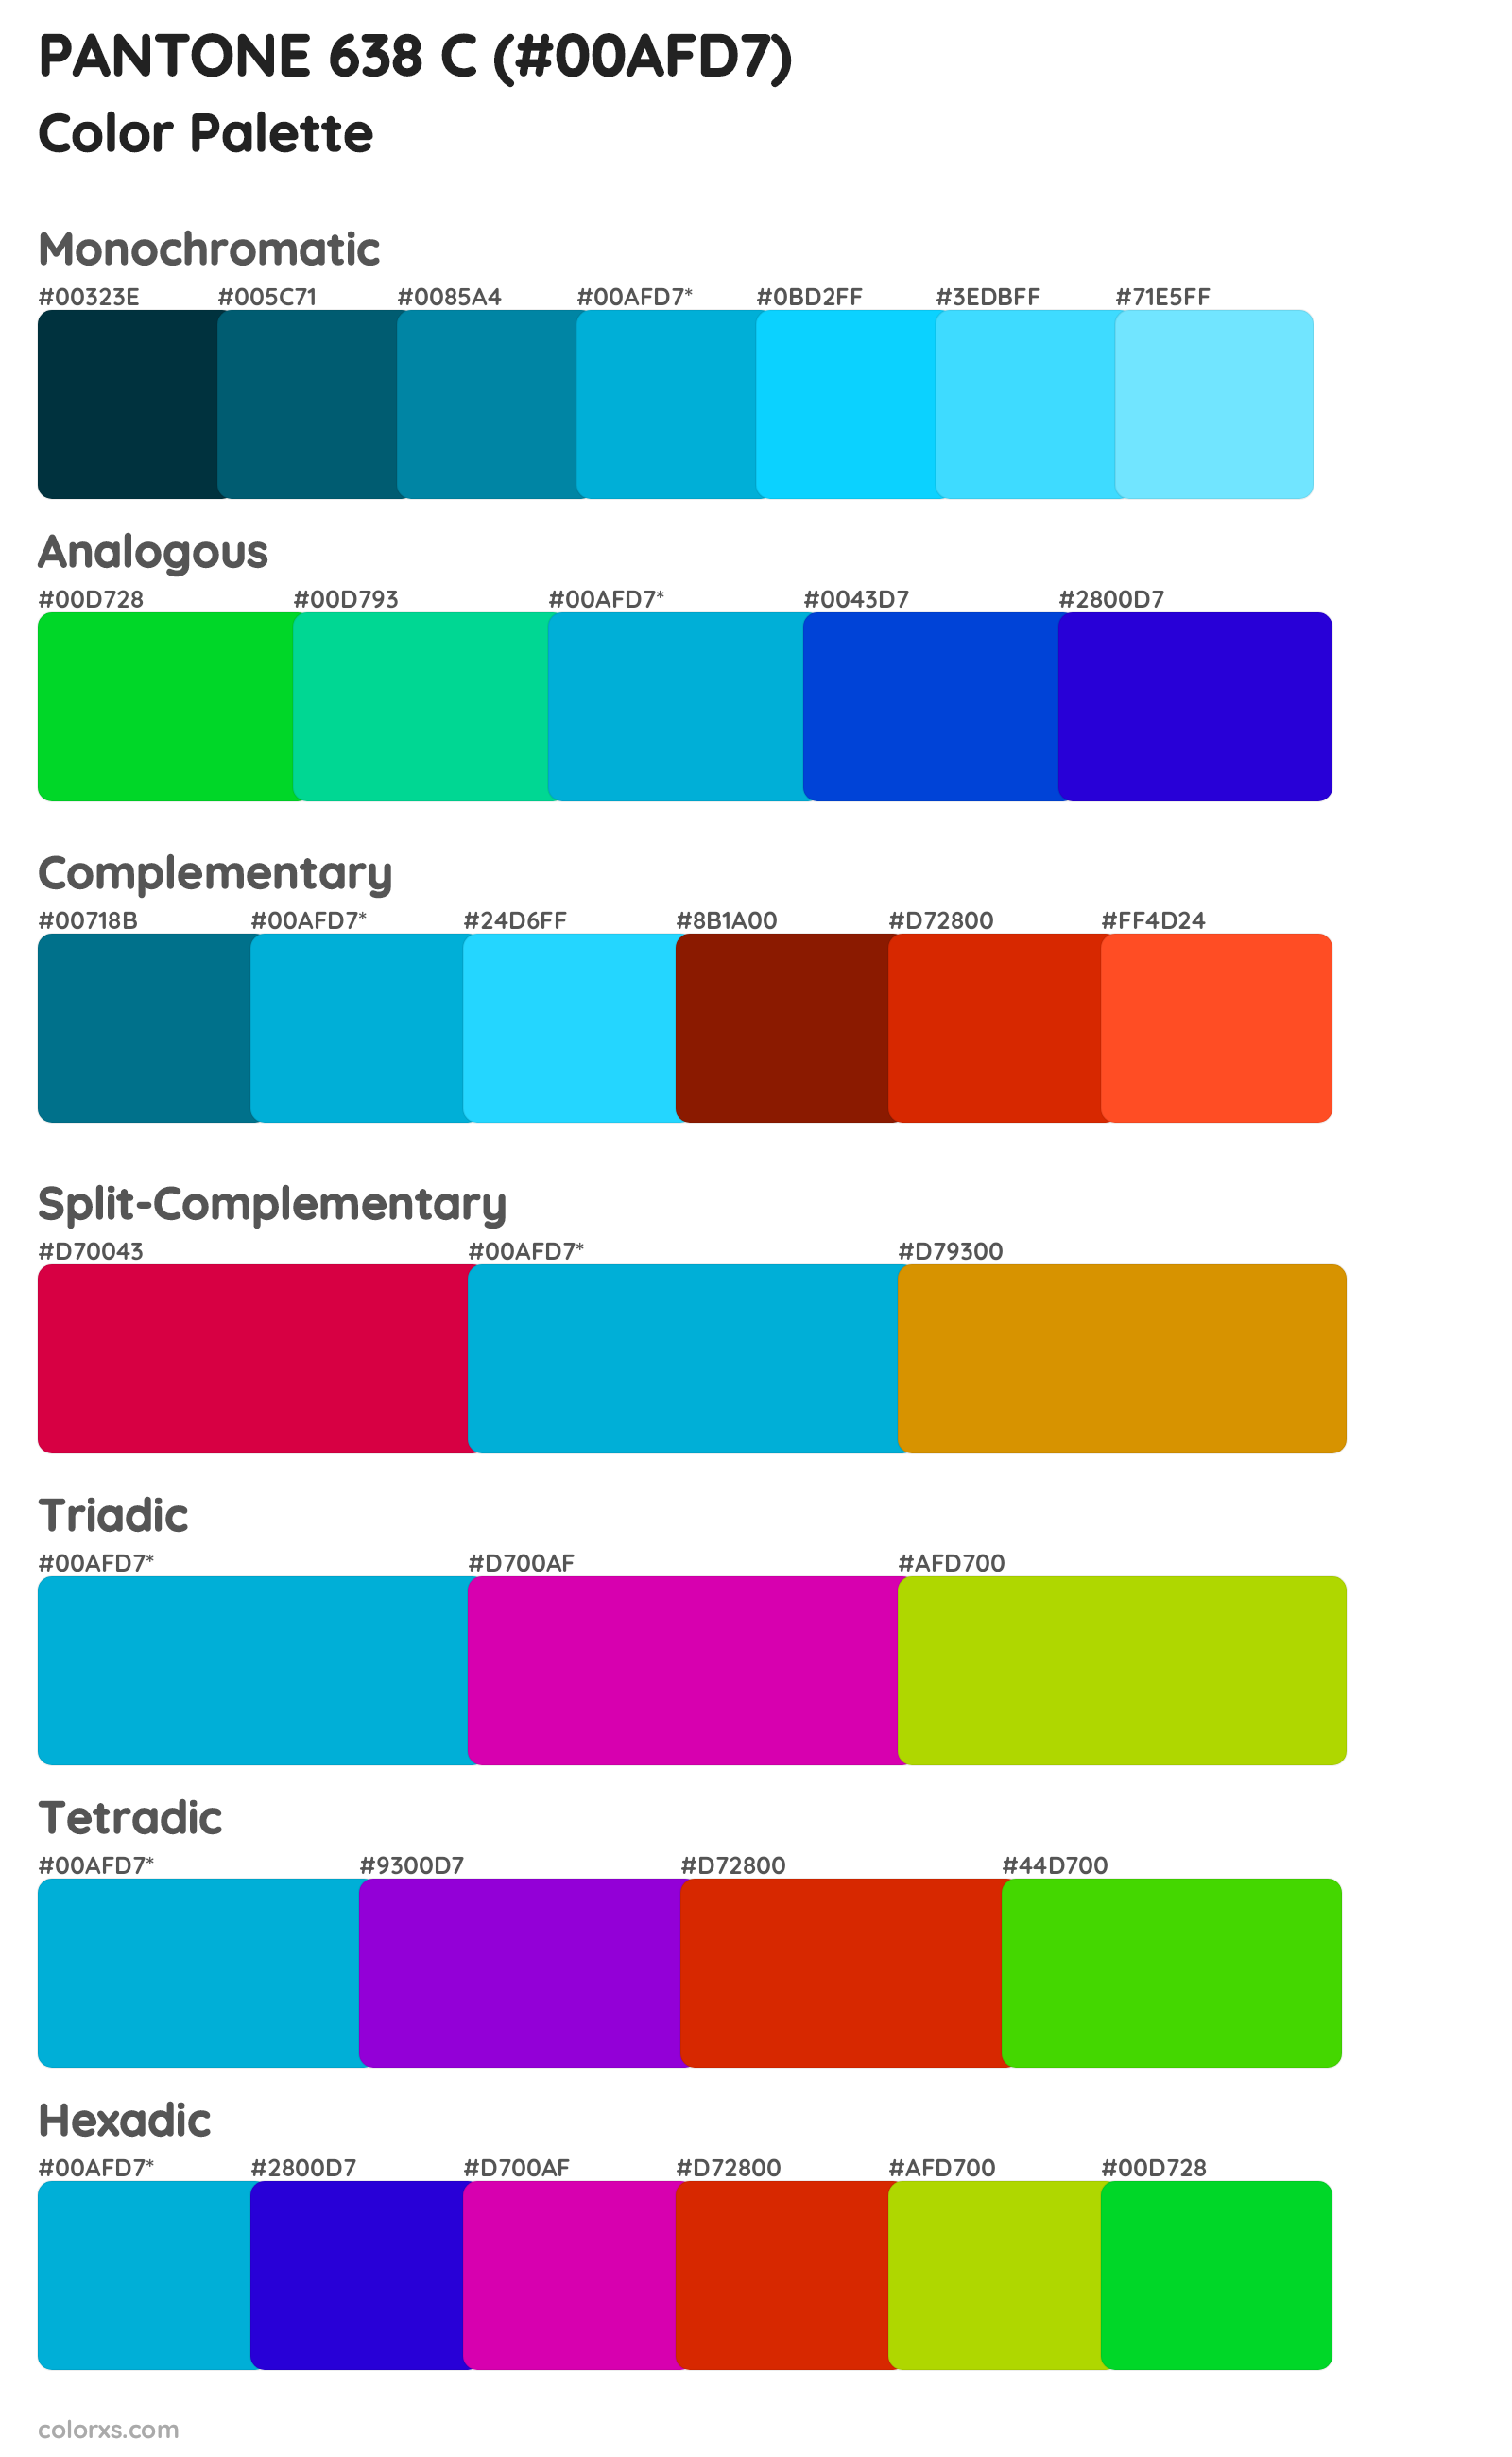 PANTONE 638 C Color Scheme Palettes